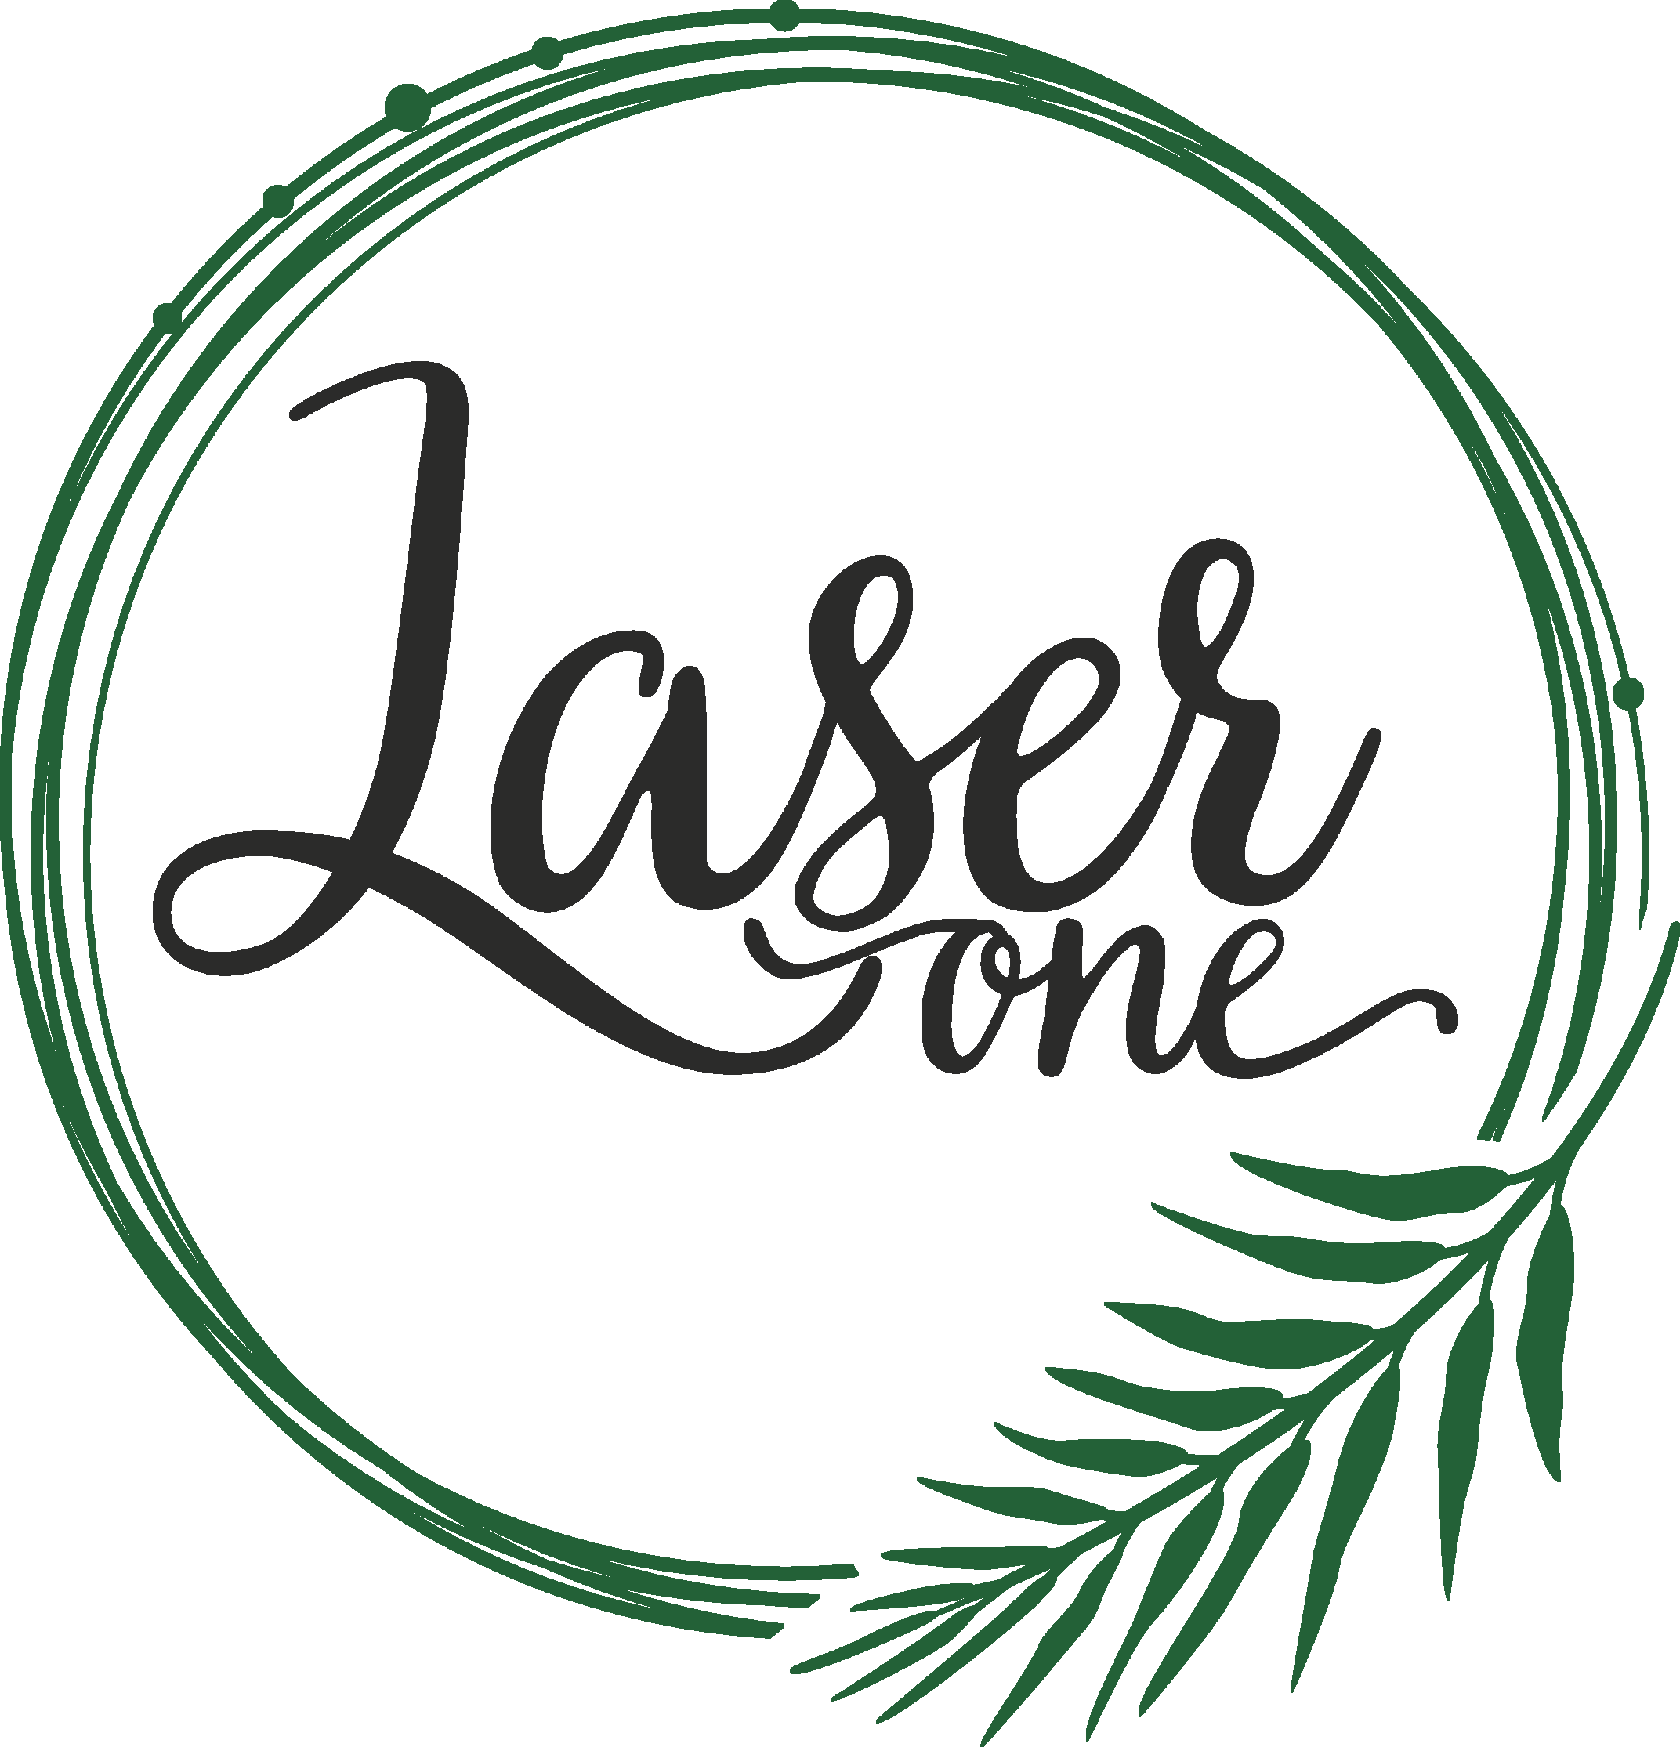 LaserOne